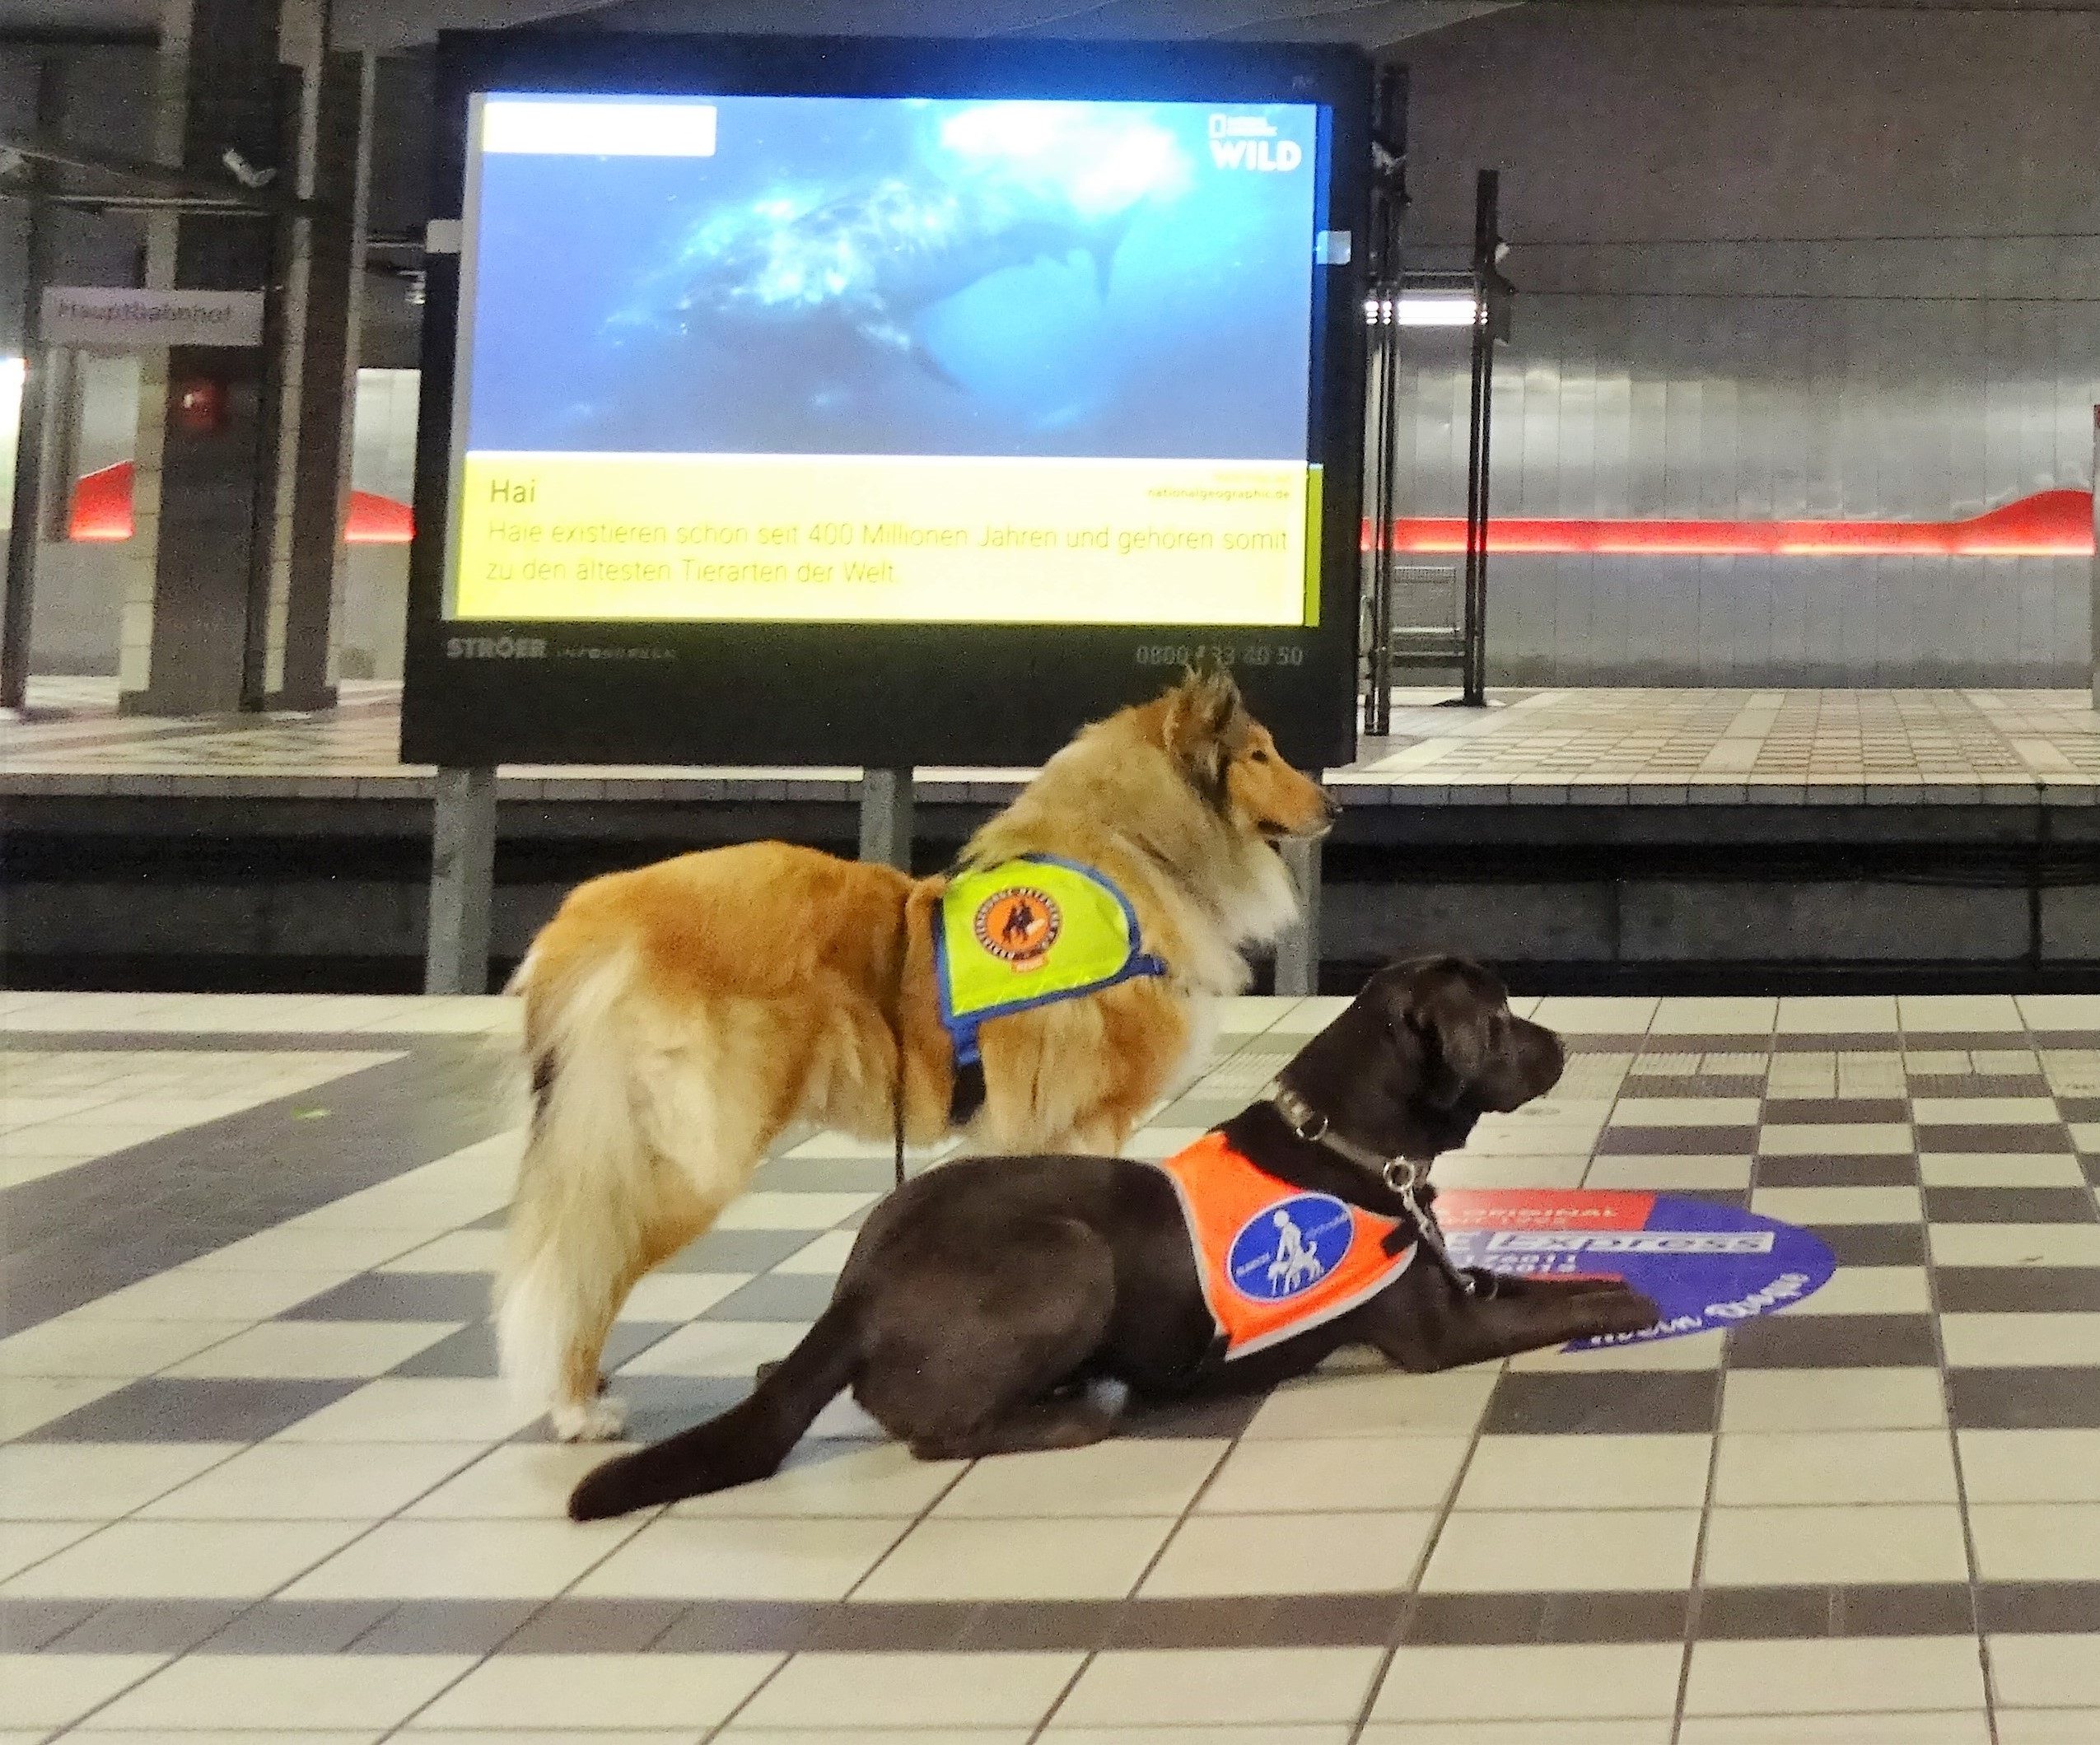 Zwei Assistenzhunde befinden sich am Bahnsteig einer U-Bahn Station. Es handelt sich um einen zobel-farbenen Collie und einen schoko-braunen Labrador. Beide Hunde tragen eine Kenndecke.